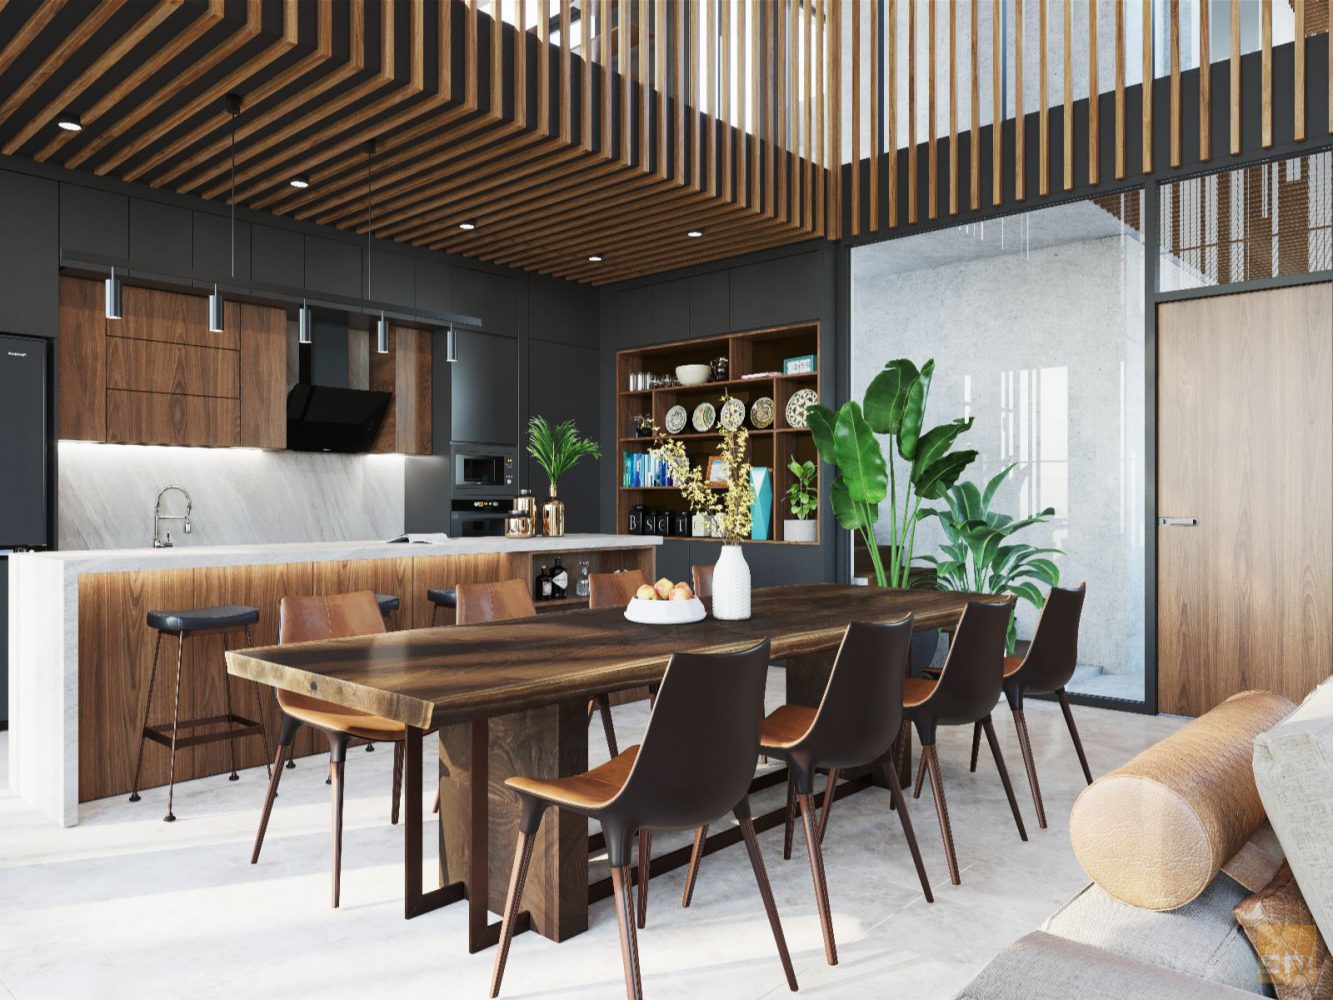 Thiết kế bàn ăn gỗ tự nhiên sang trọng trong Penhouse Nha Trang do S-housing thực hiện